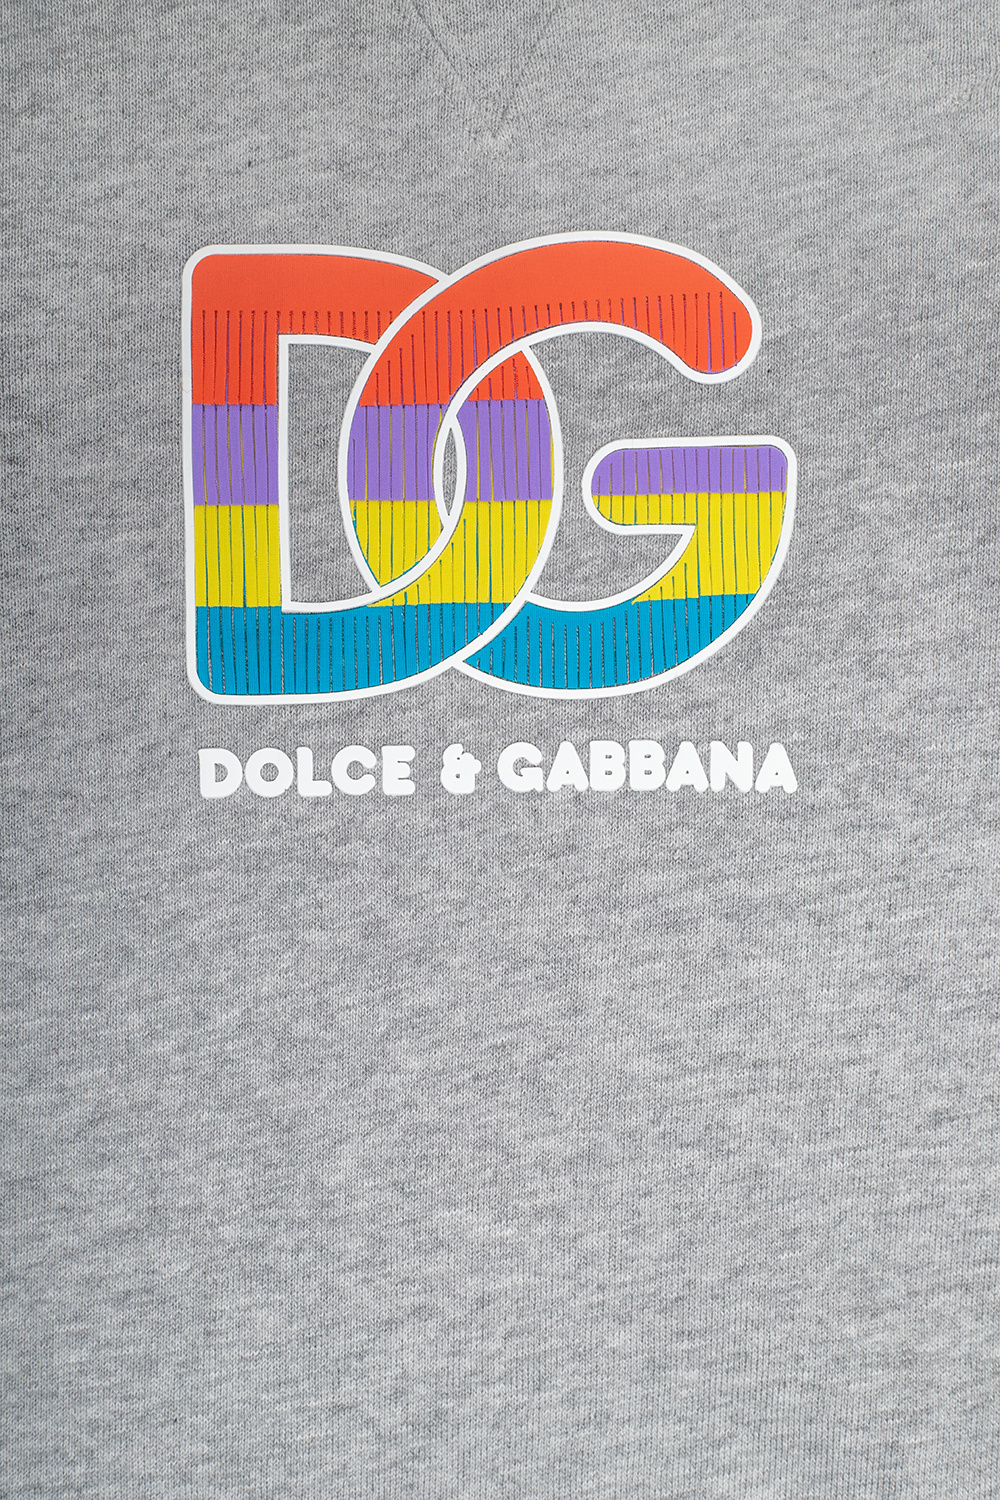 uomo dolce gabbana top t shirt in cotone Dolce & Gabbana 90s Belt